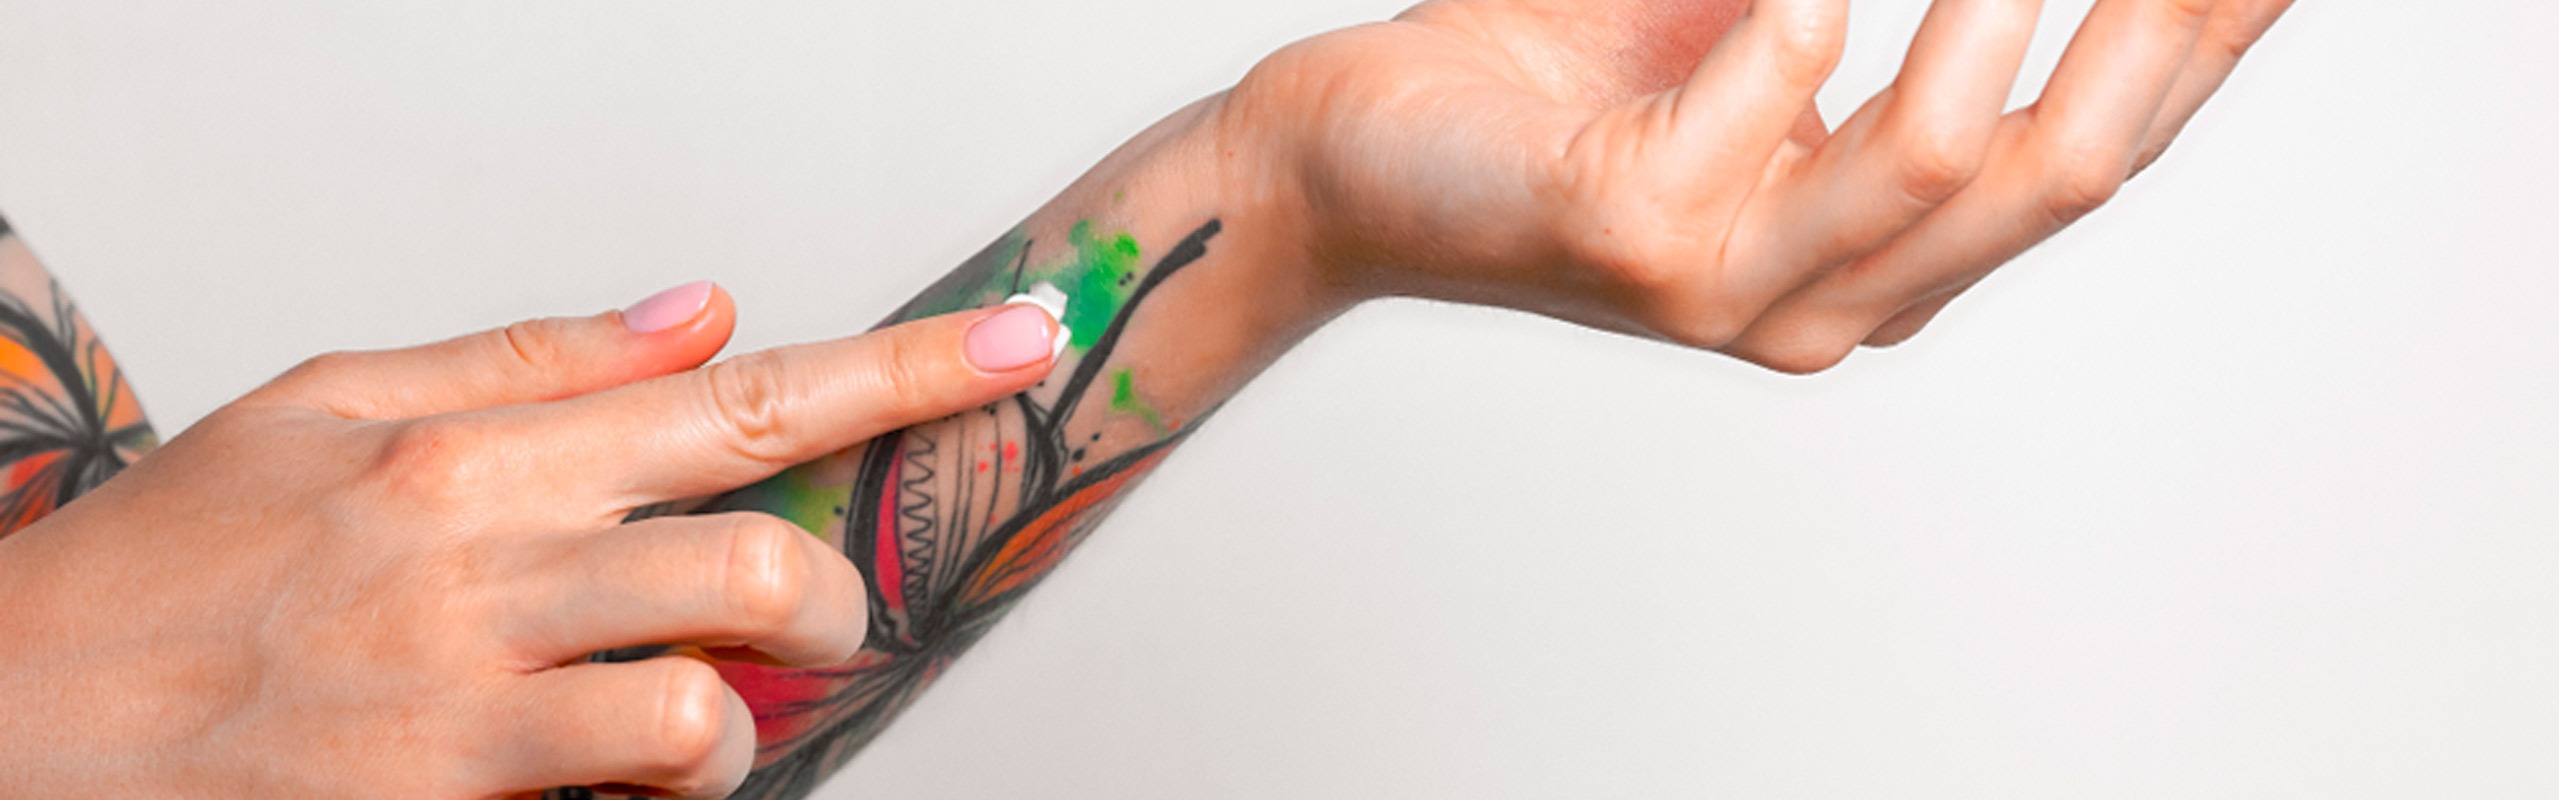 Cómo curar un tatuaje infectado? - Escuela el Gremio